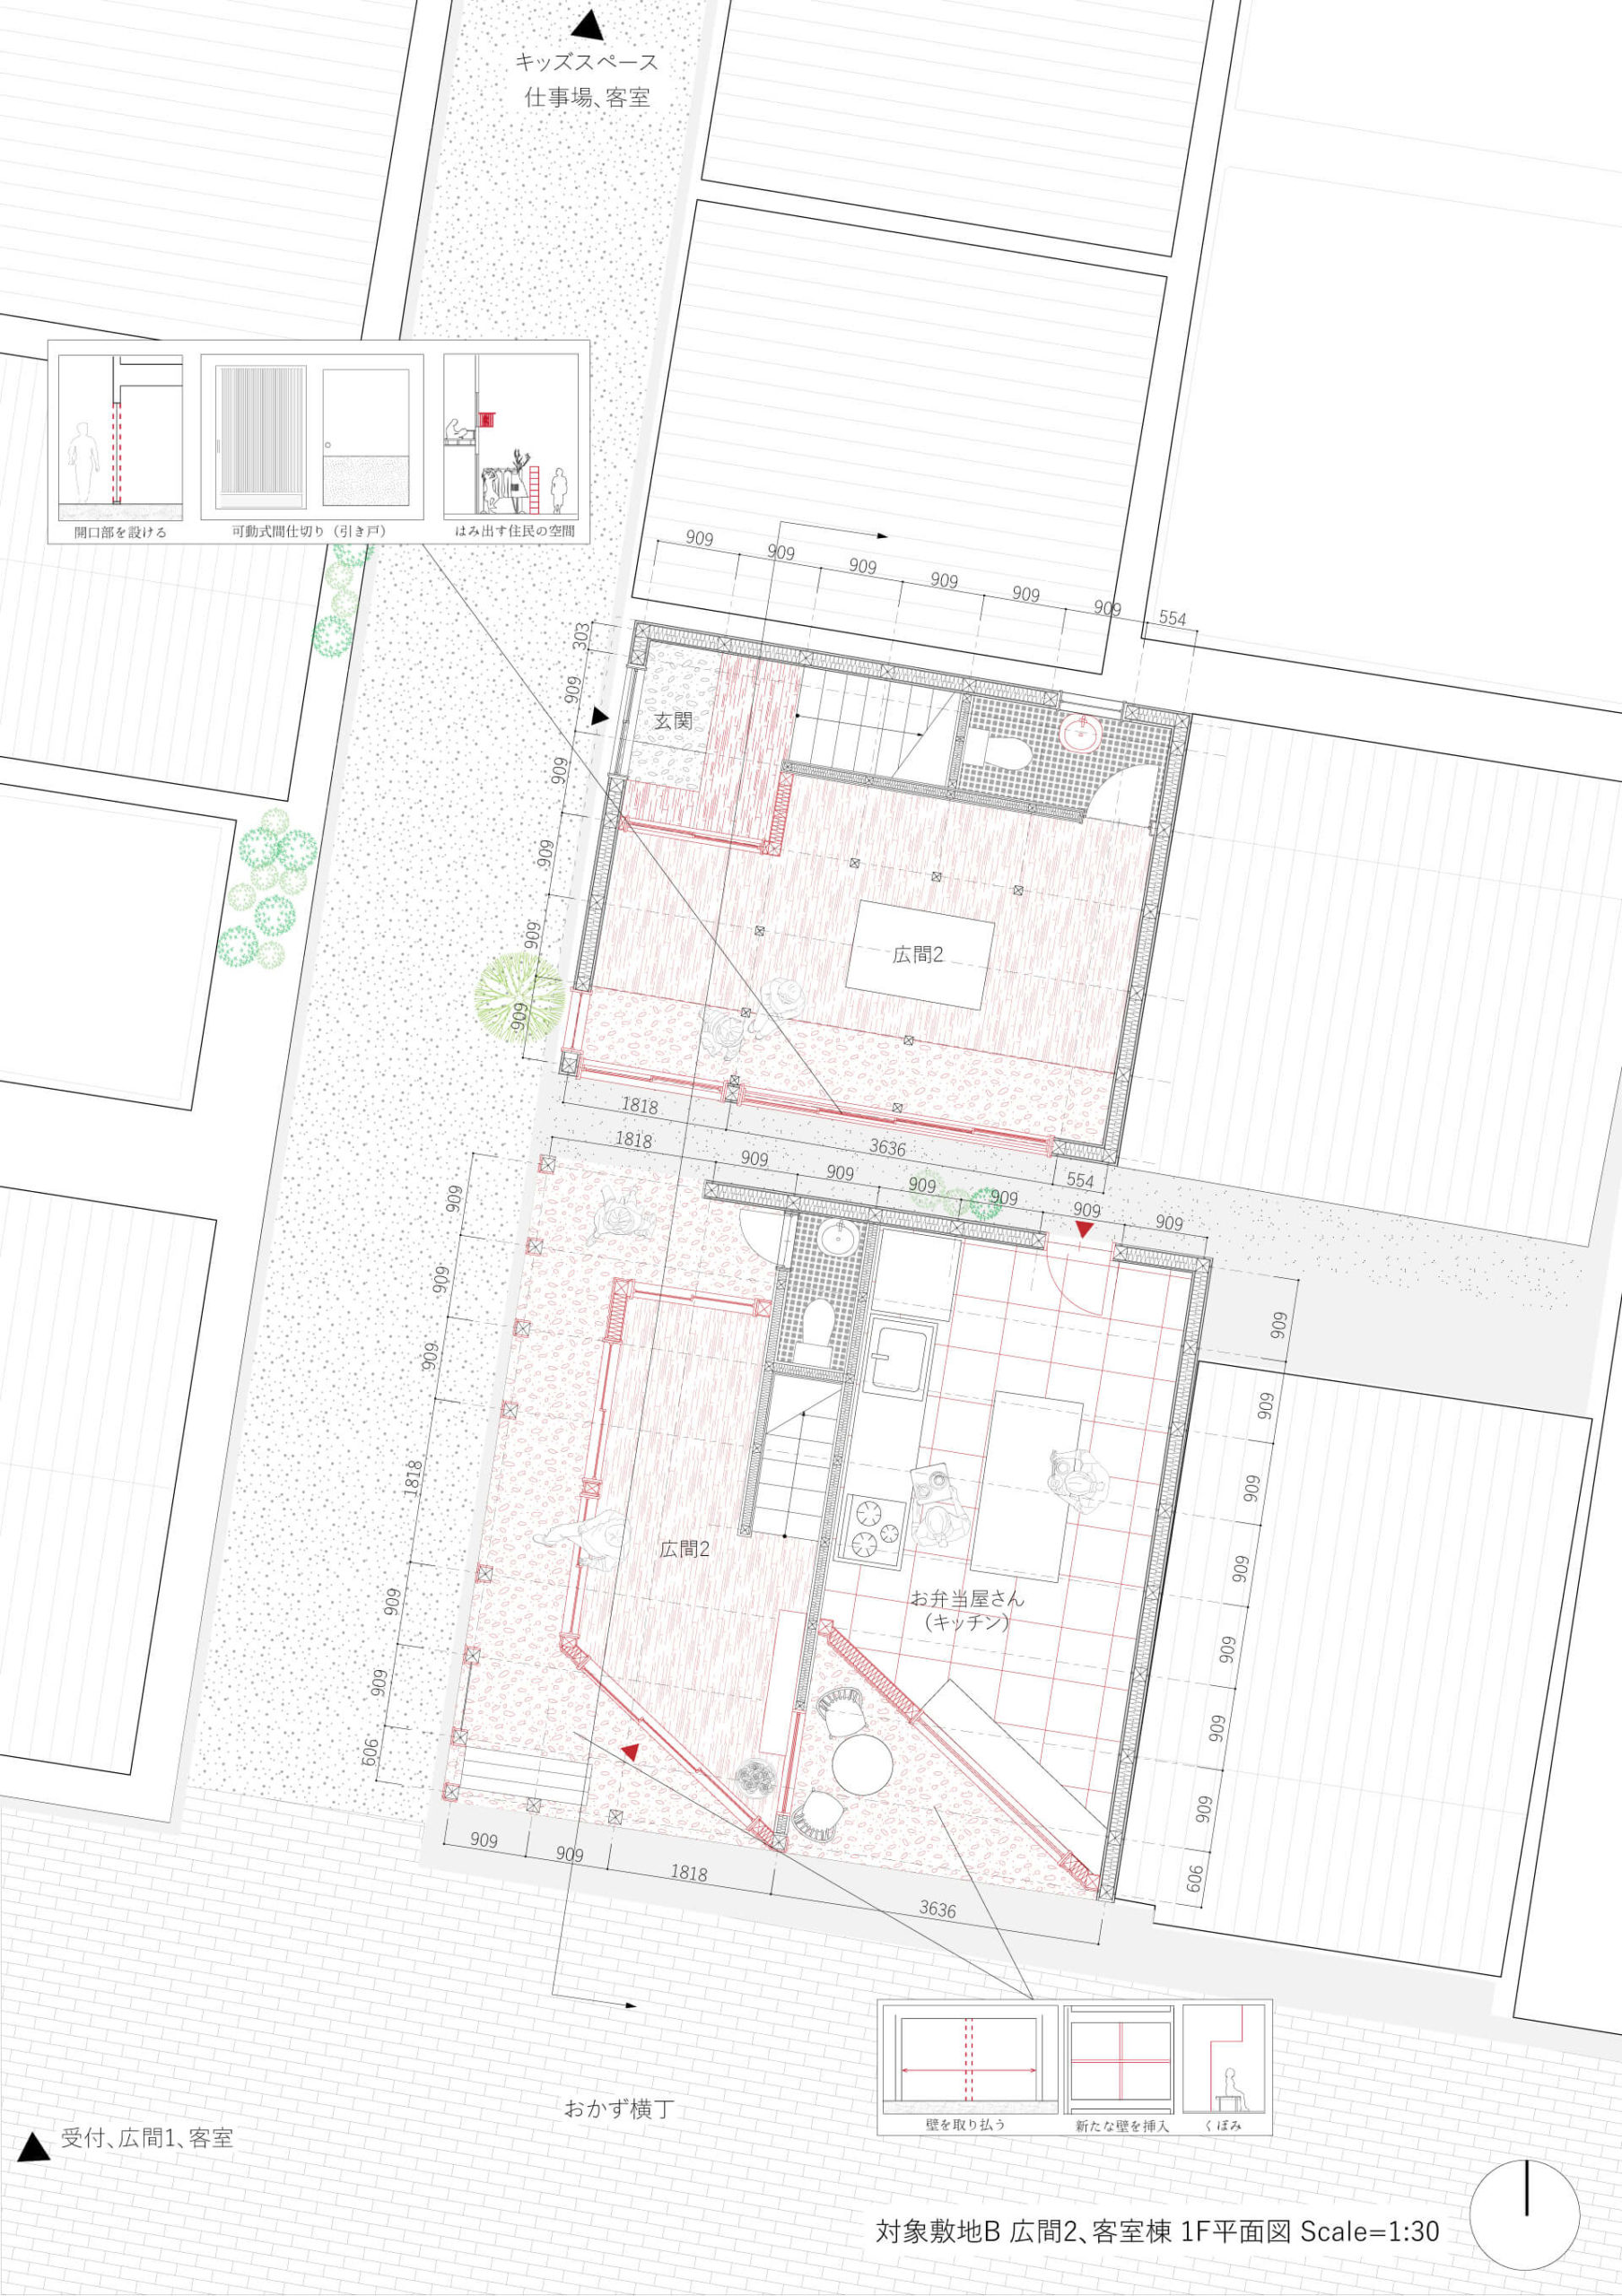 分散型宿泊施設による街のデザイン手法の提案-11